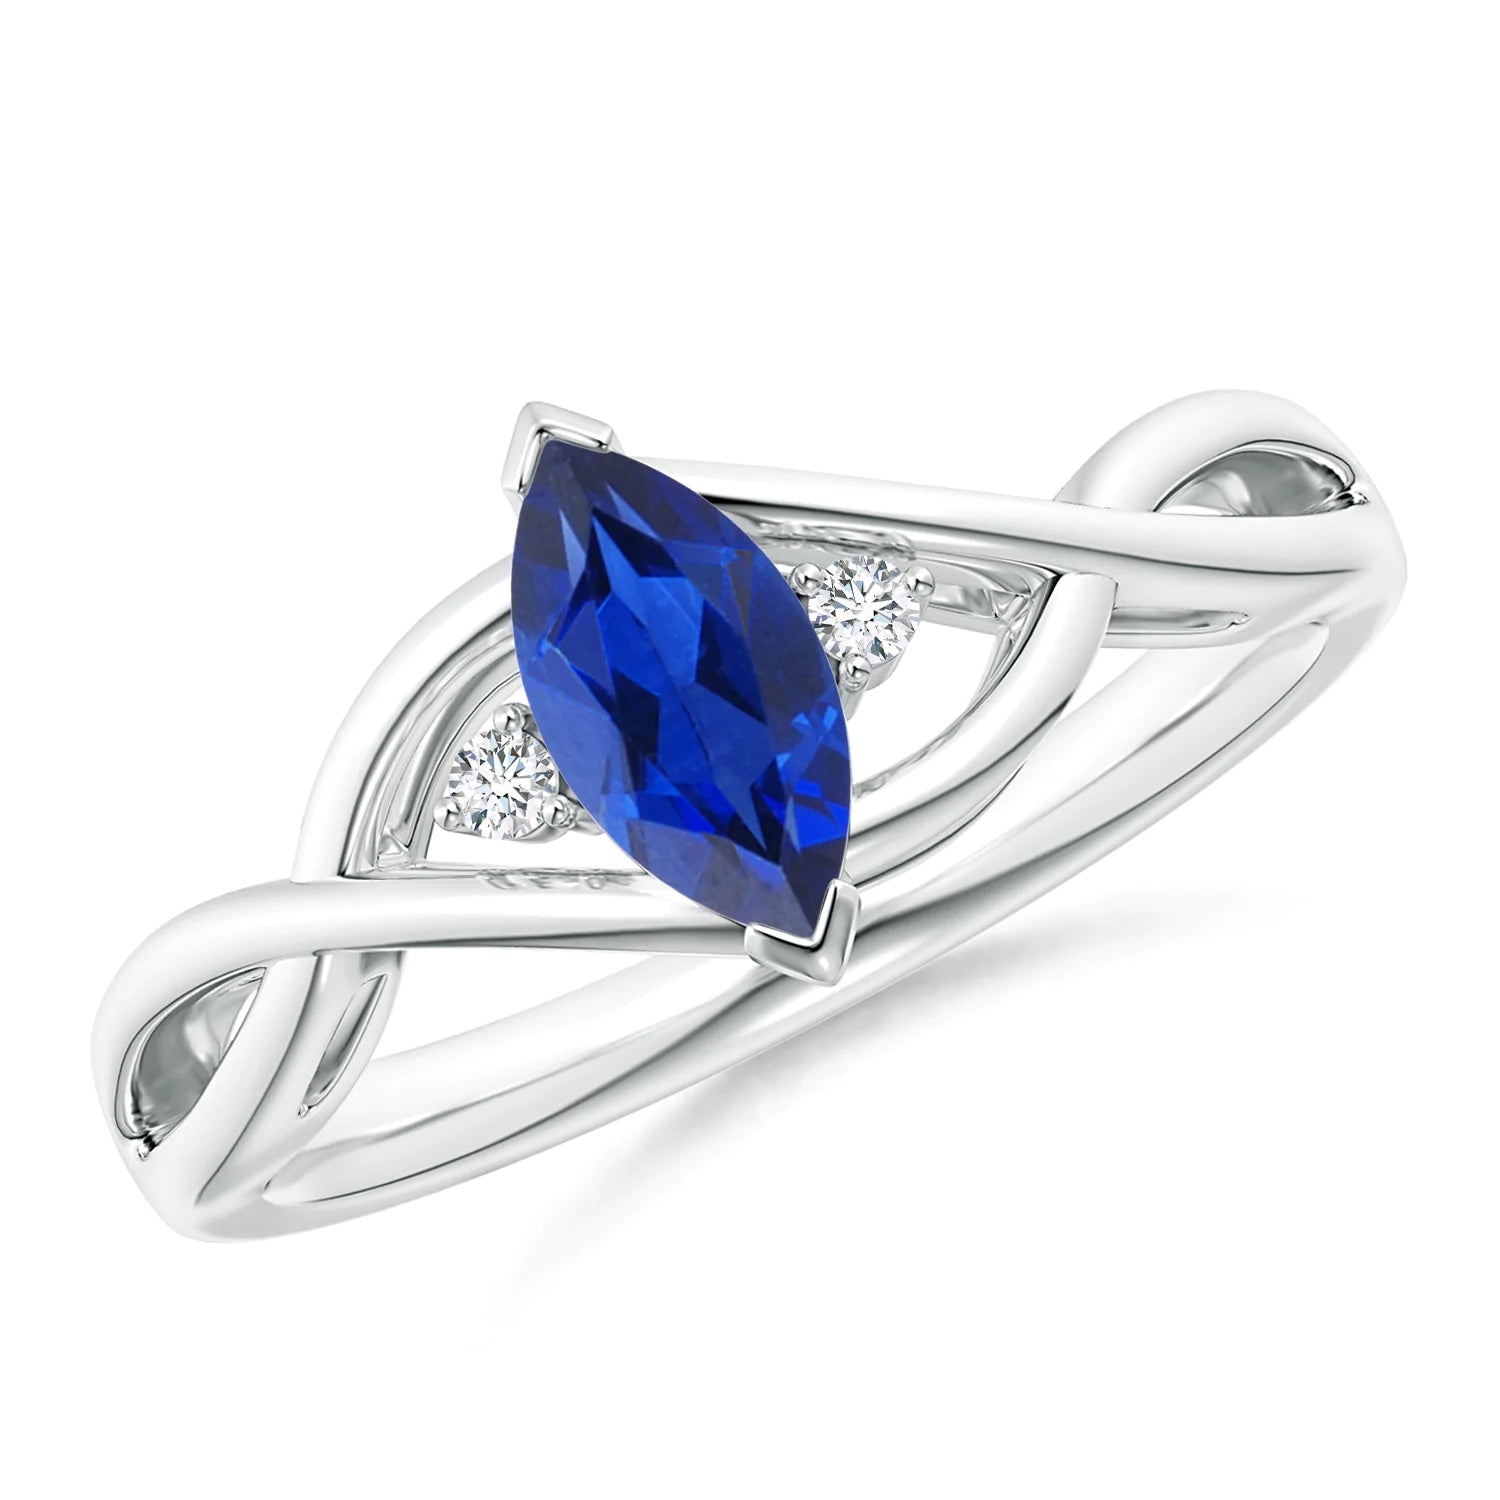 Infinity Kentucky Blue Sapphire Earrings in Sterling Silver